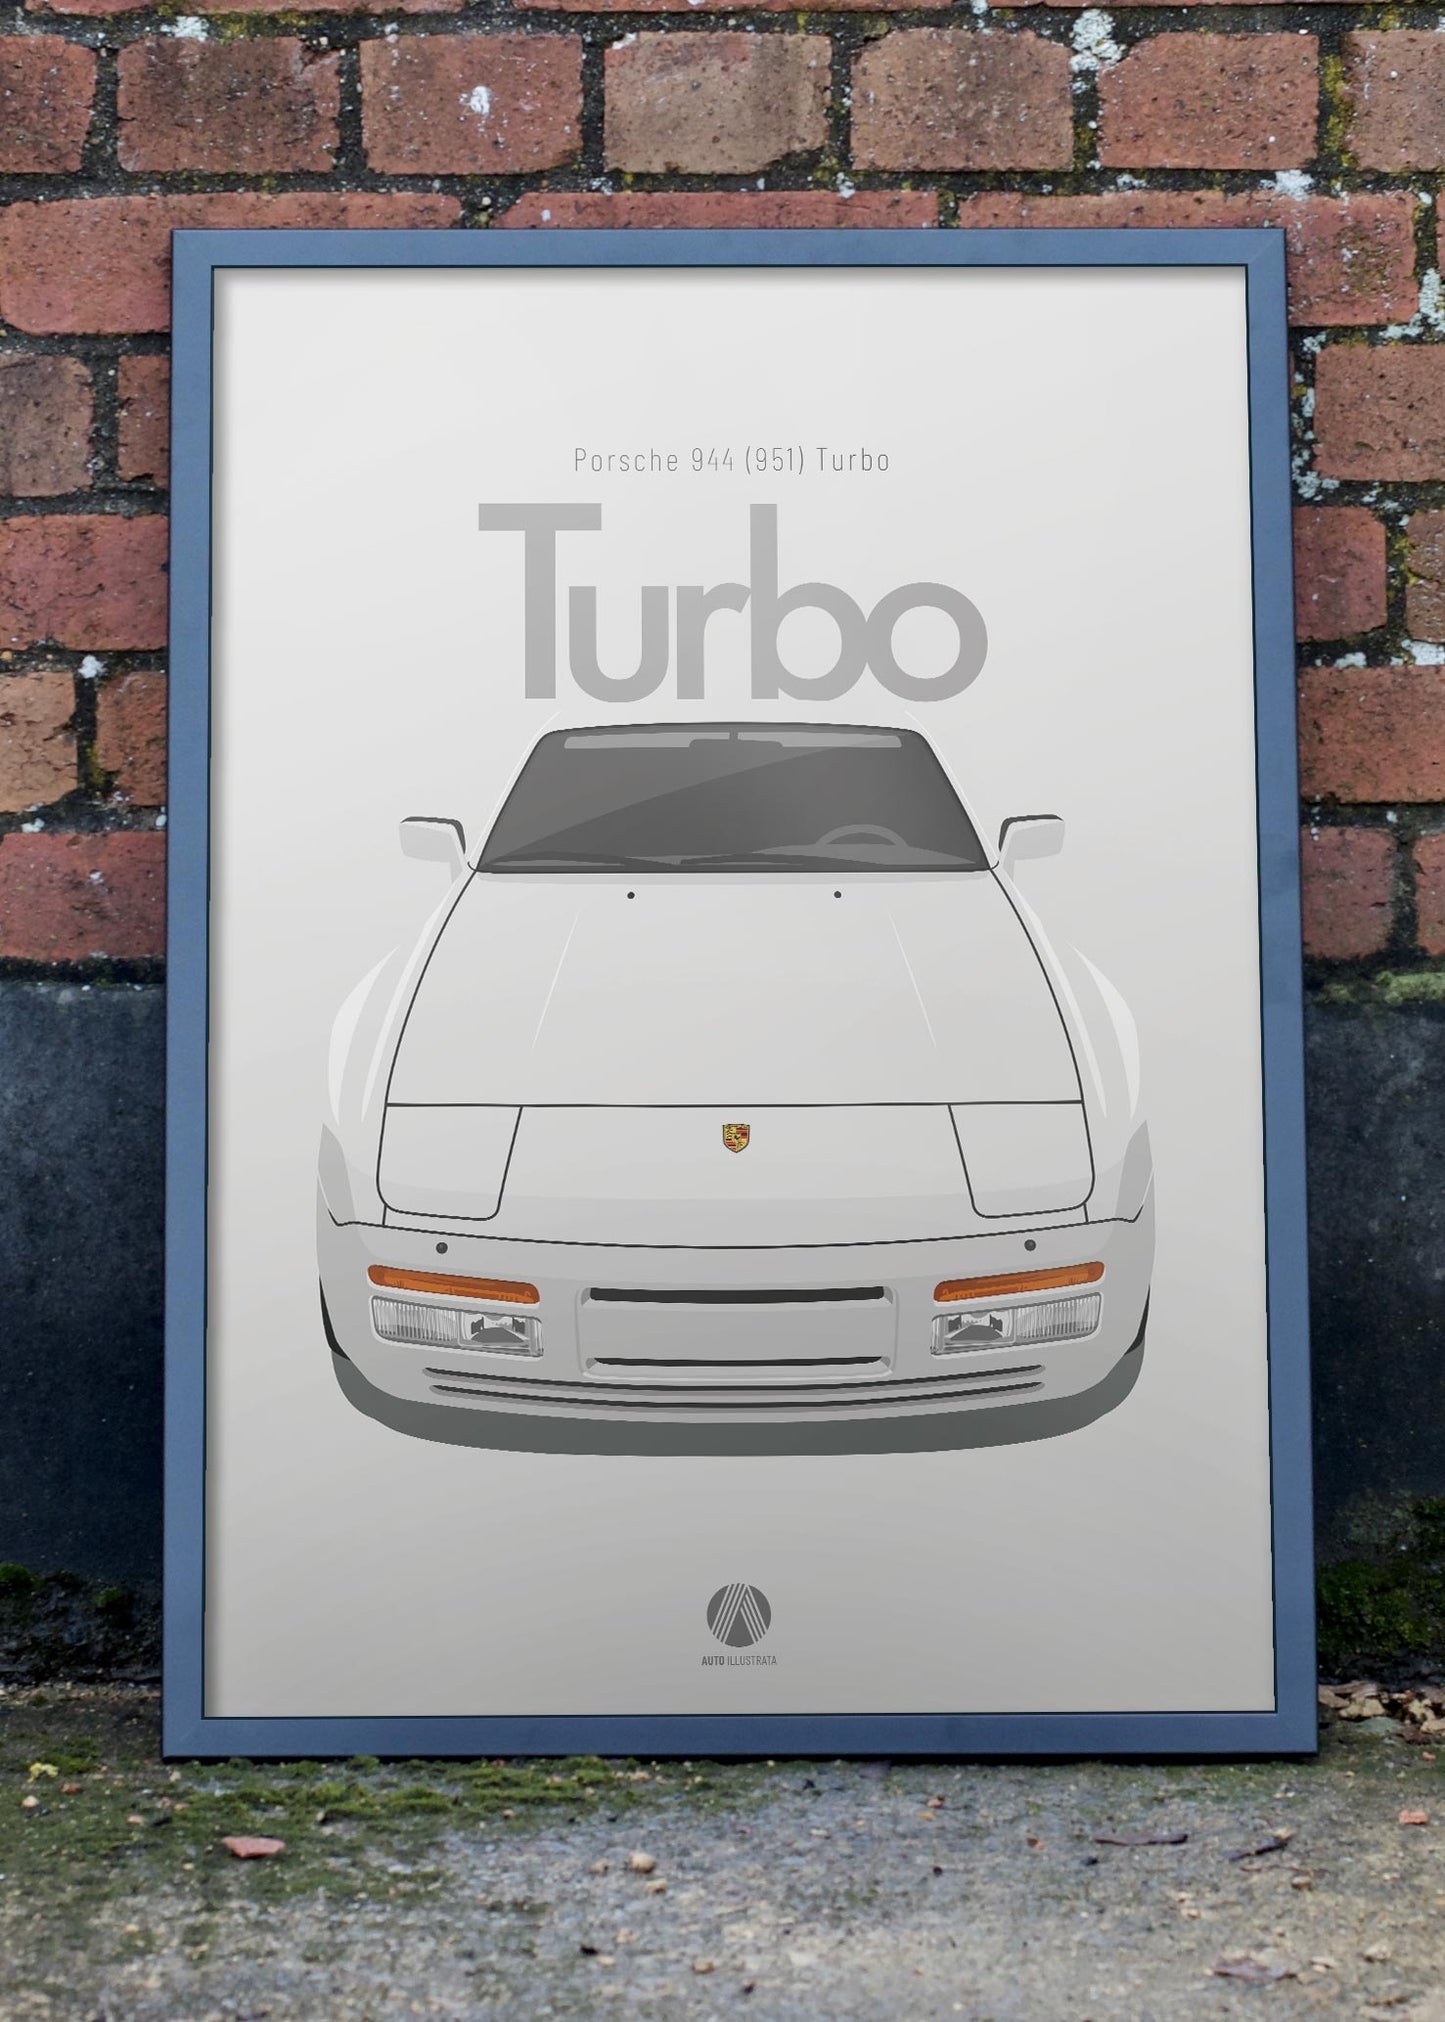 1986 Porsche 944 (951) Turbo - L90E Alpine White - poster print